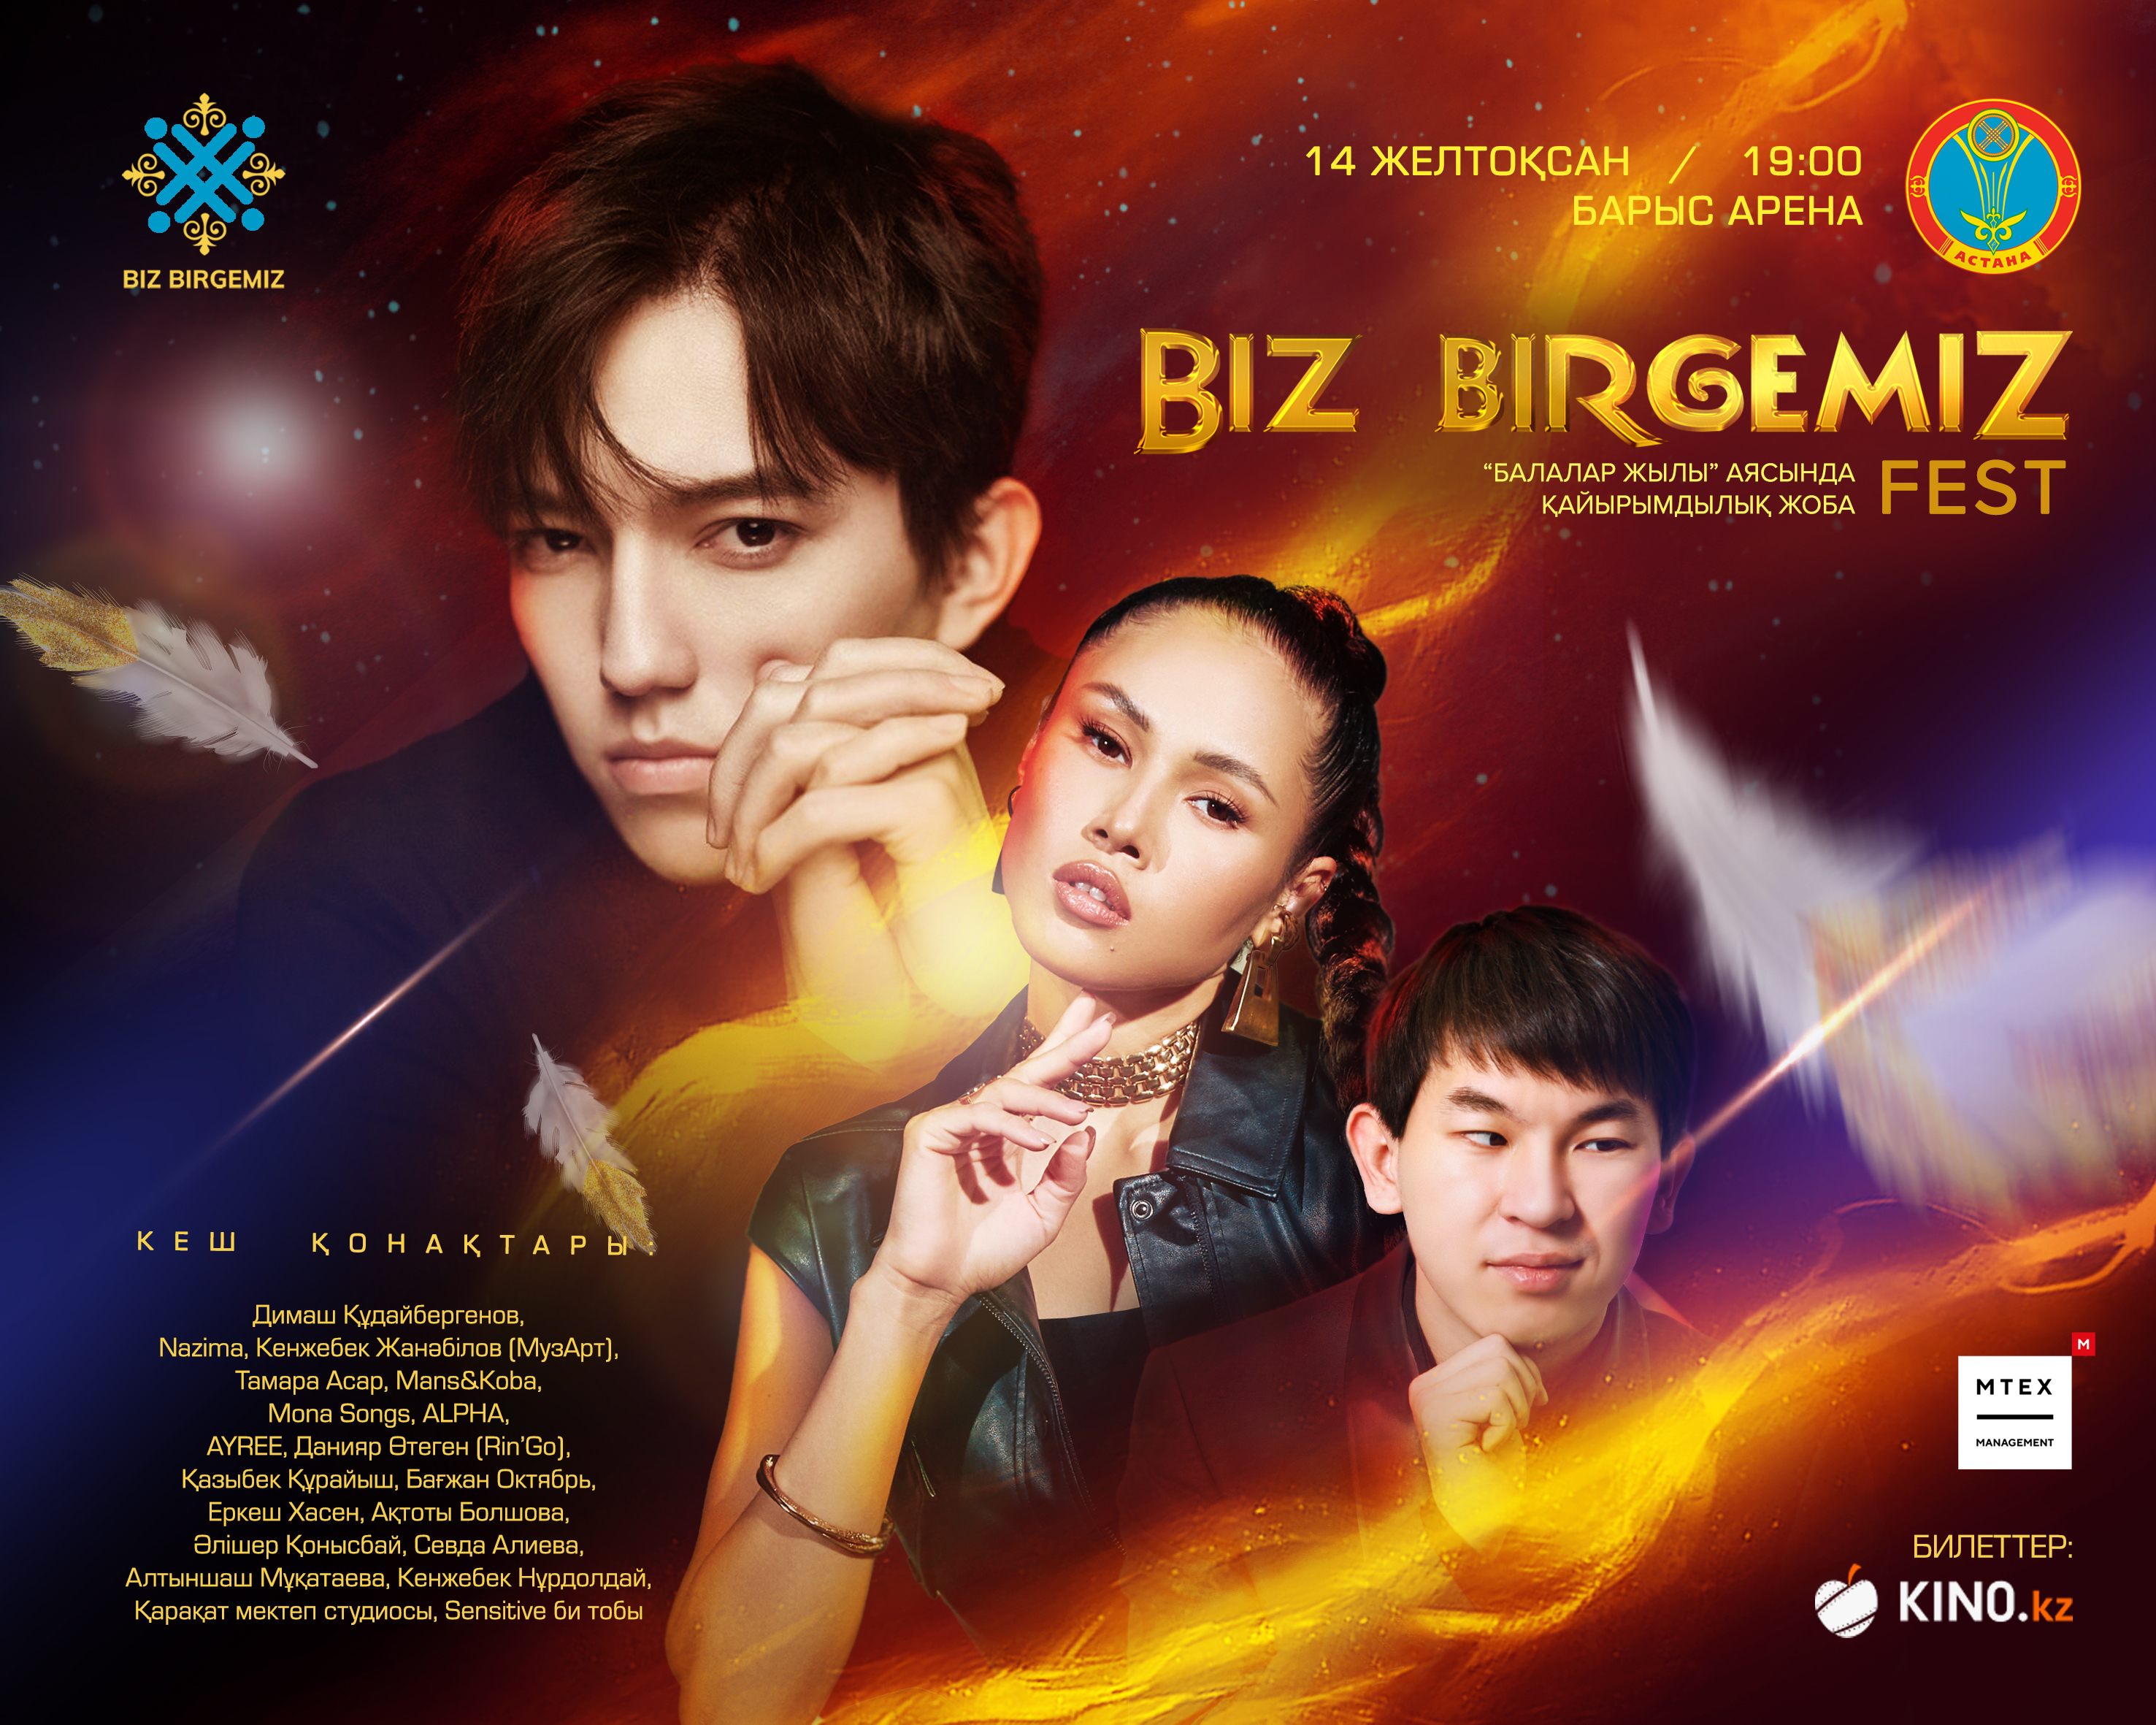 Благотворительный фестиваль BIZ BIRGEMIZ Fest состоится в Астане